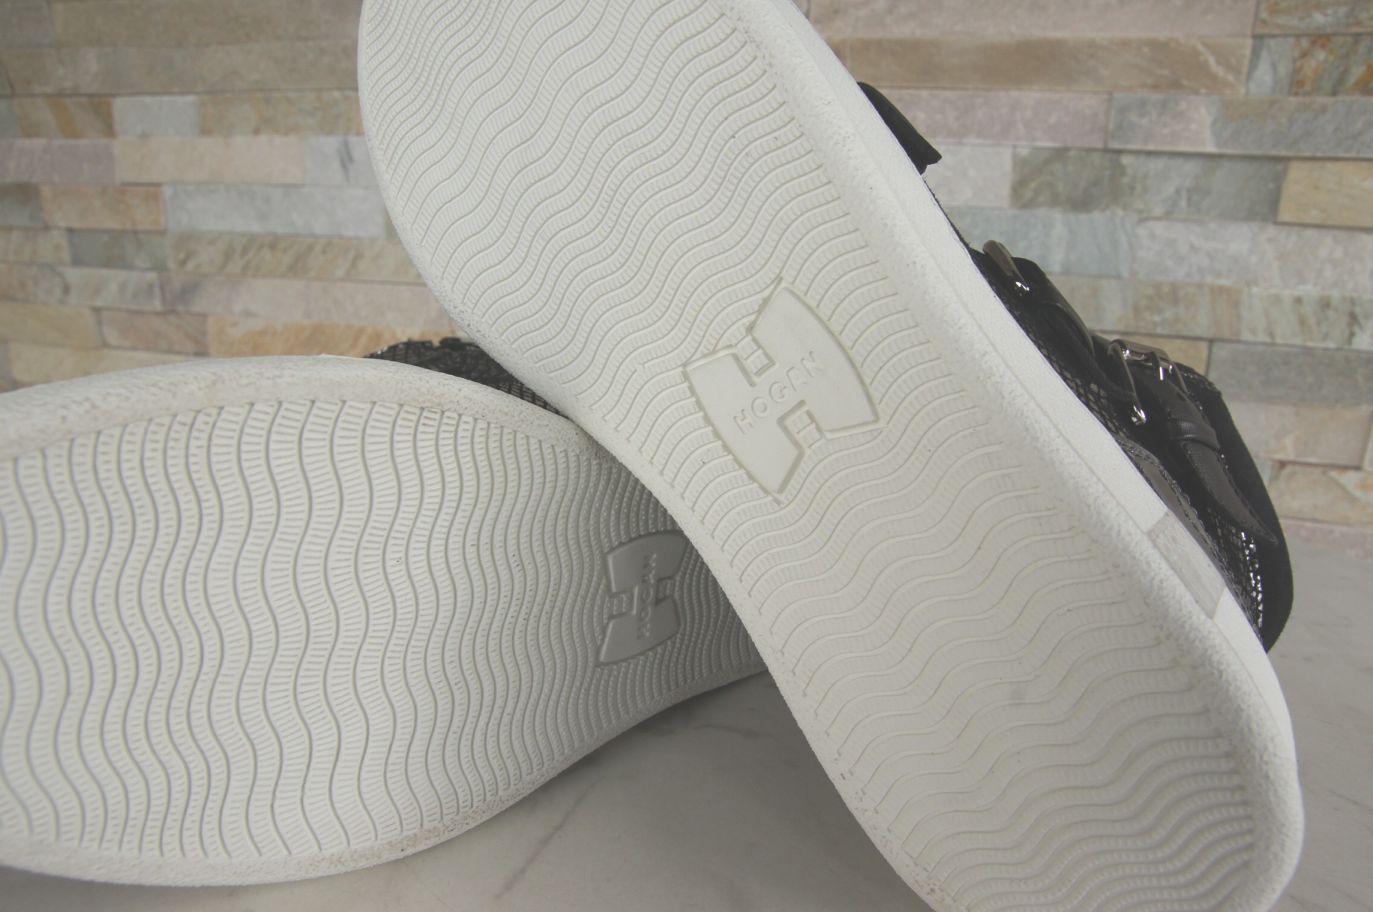 HOGAN Gr 38,5 High-Top Sneakers Stiefeletten booties Schuhe NEU ehem. UVP 430 